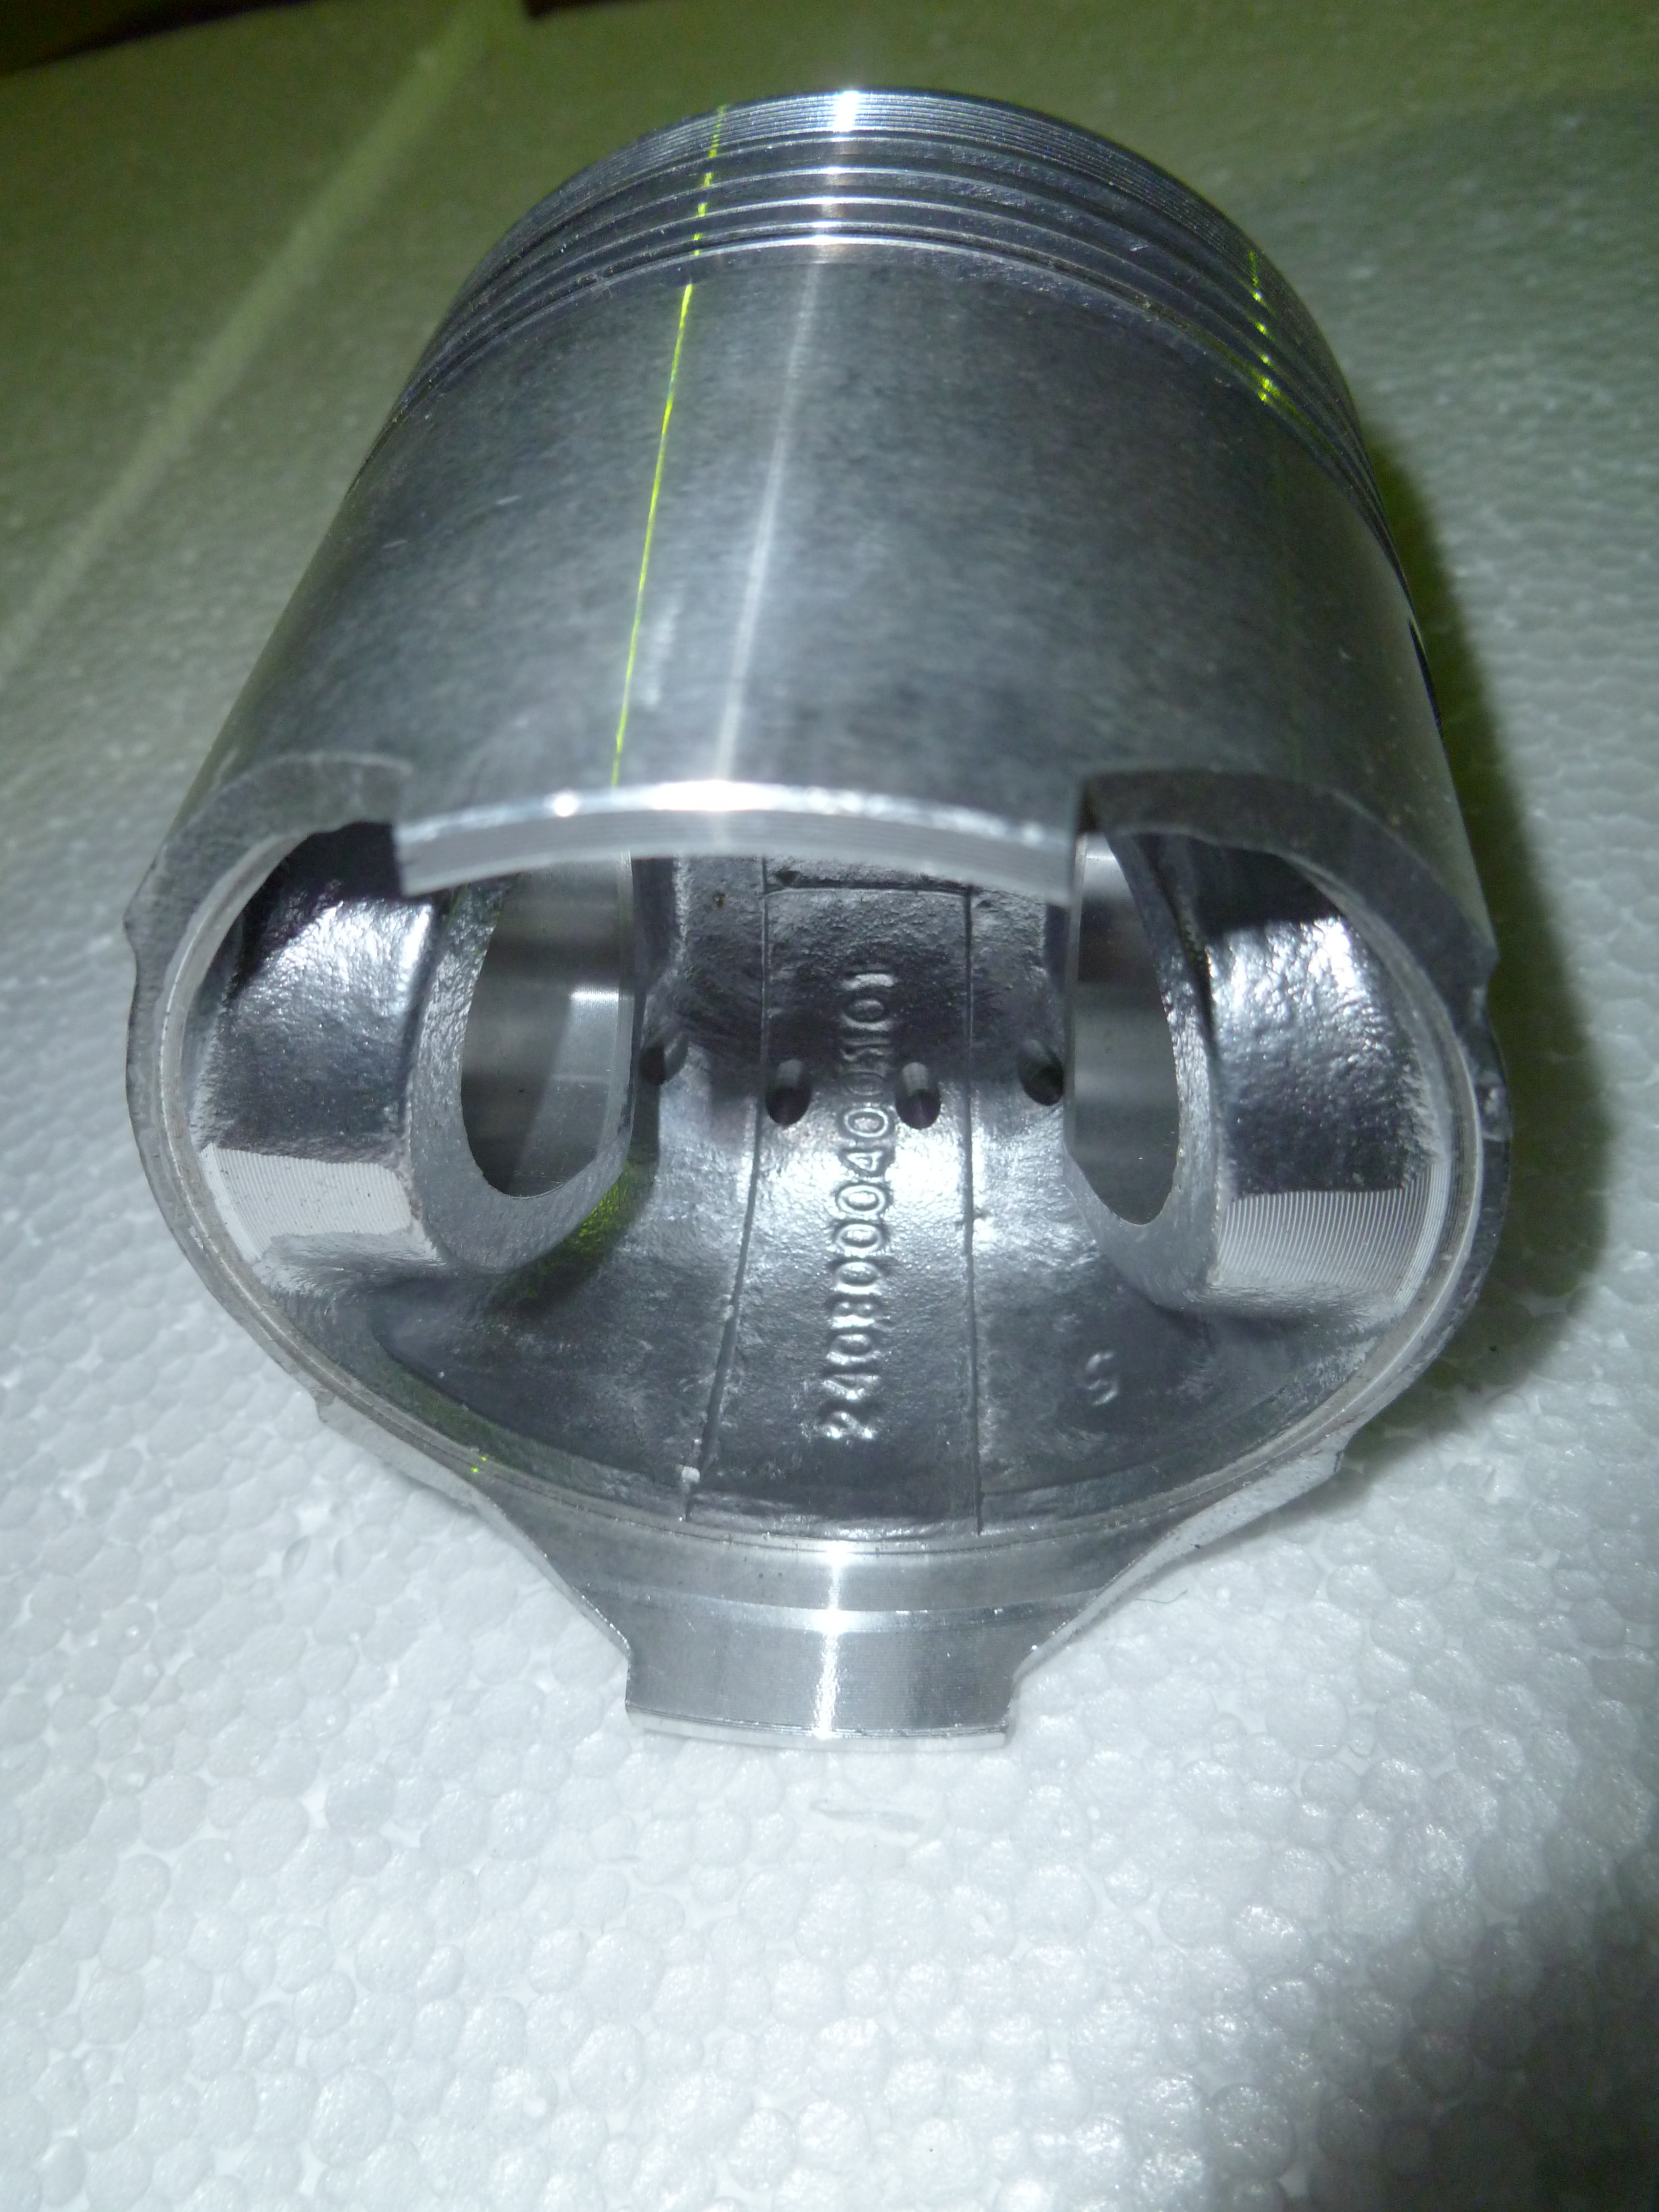 Поршень TDQ 15 4L (D=80 мм)/Piston